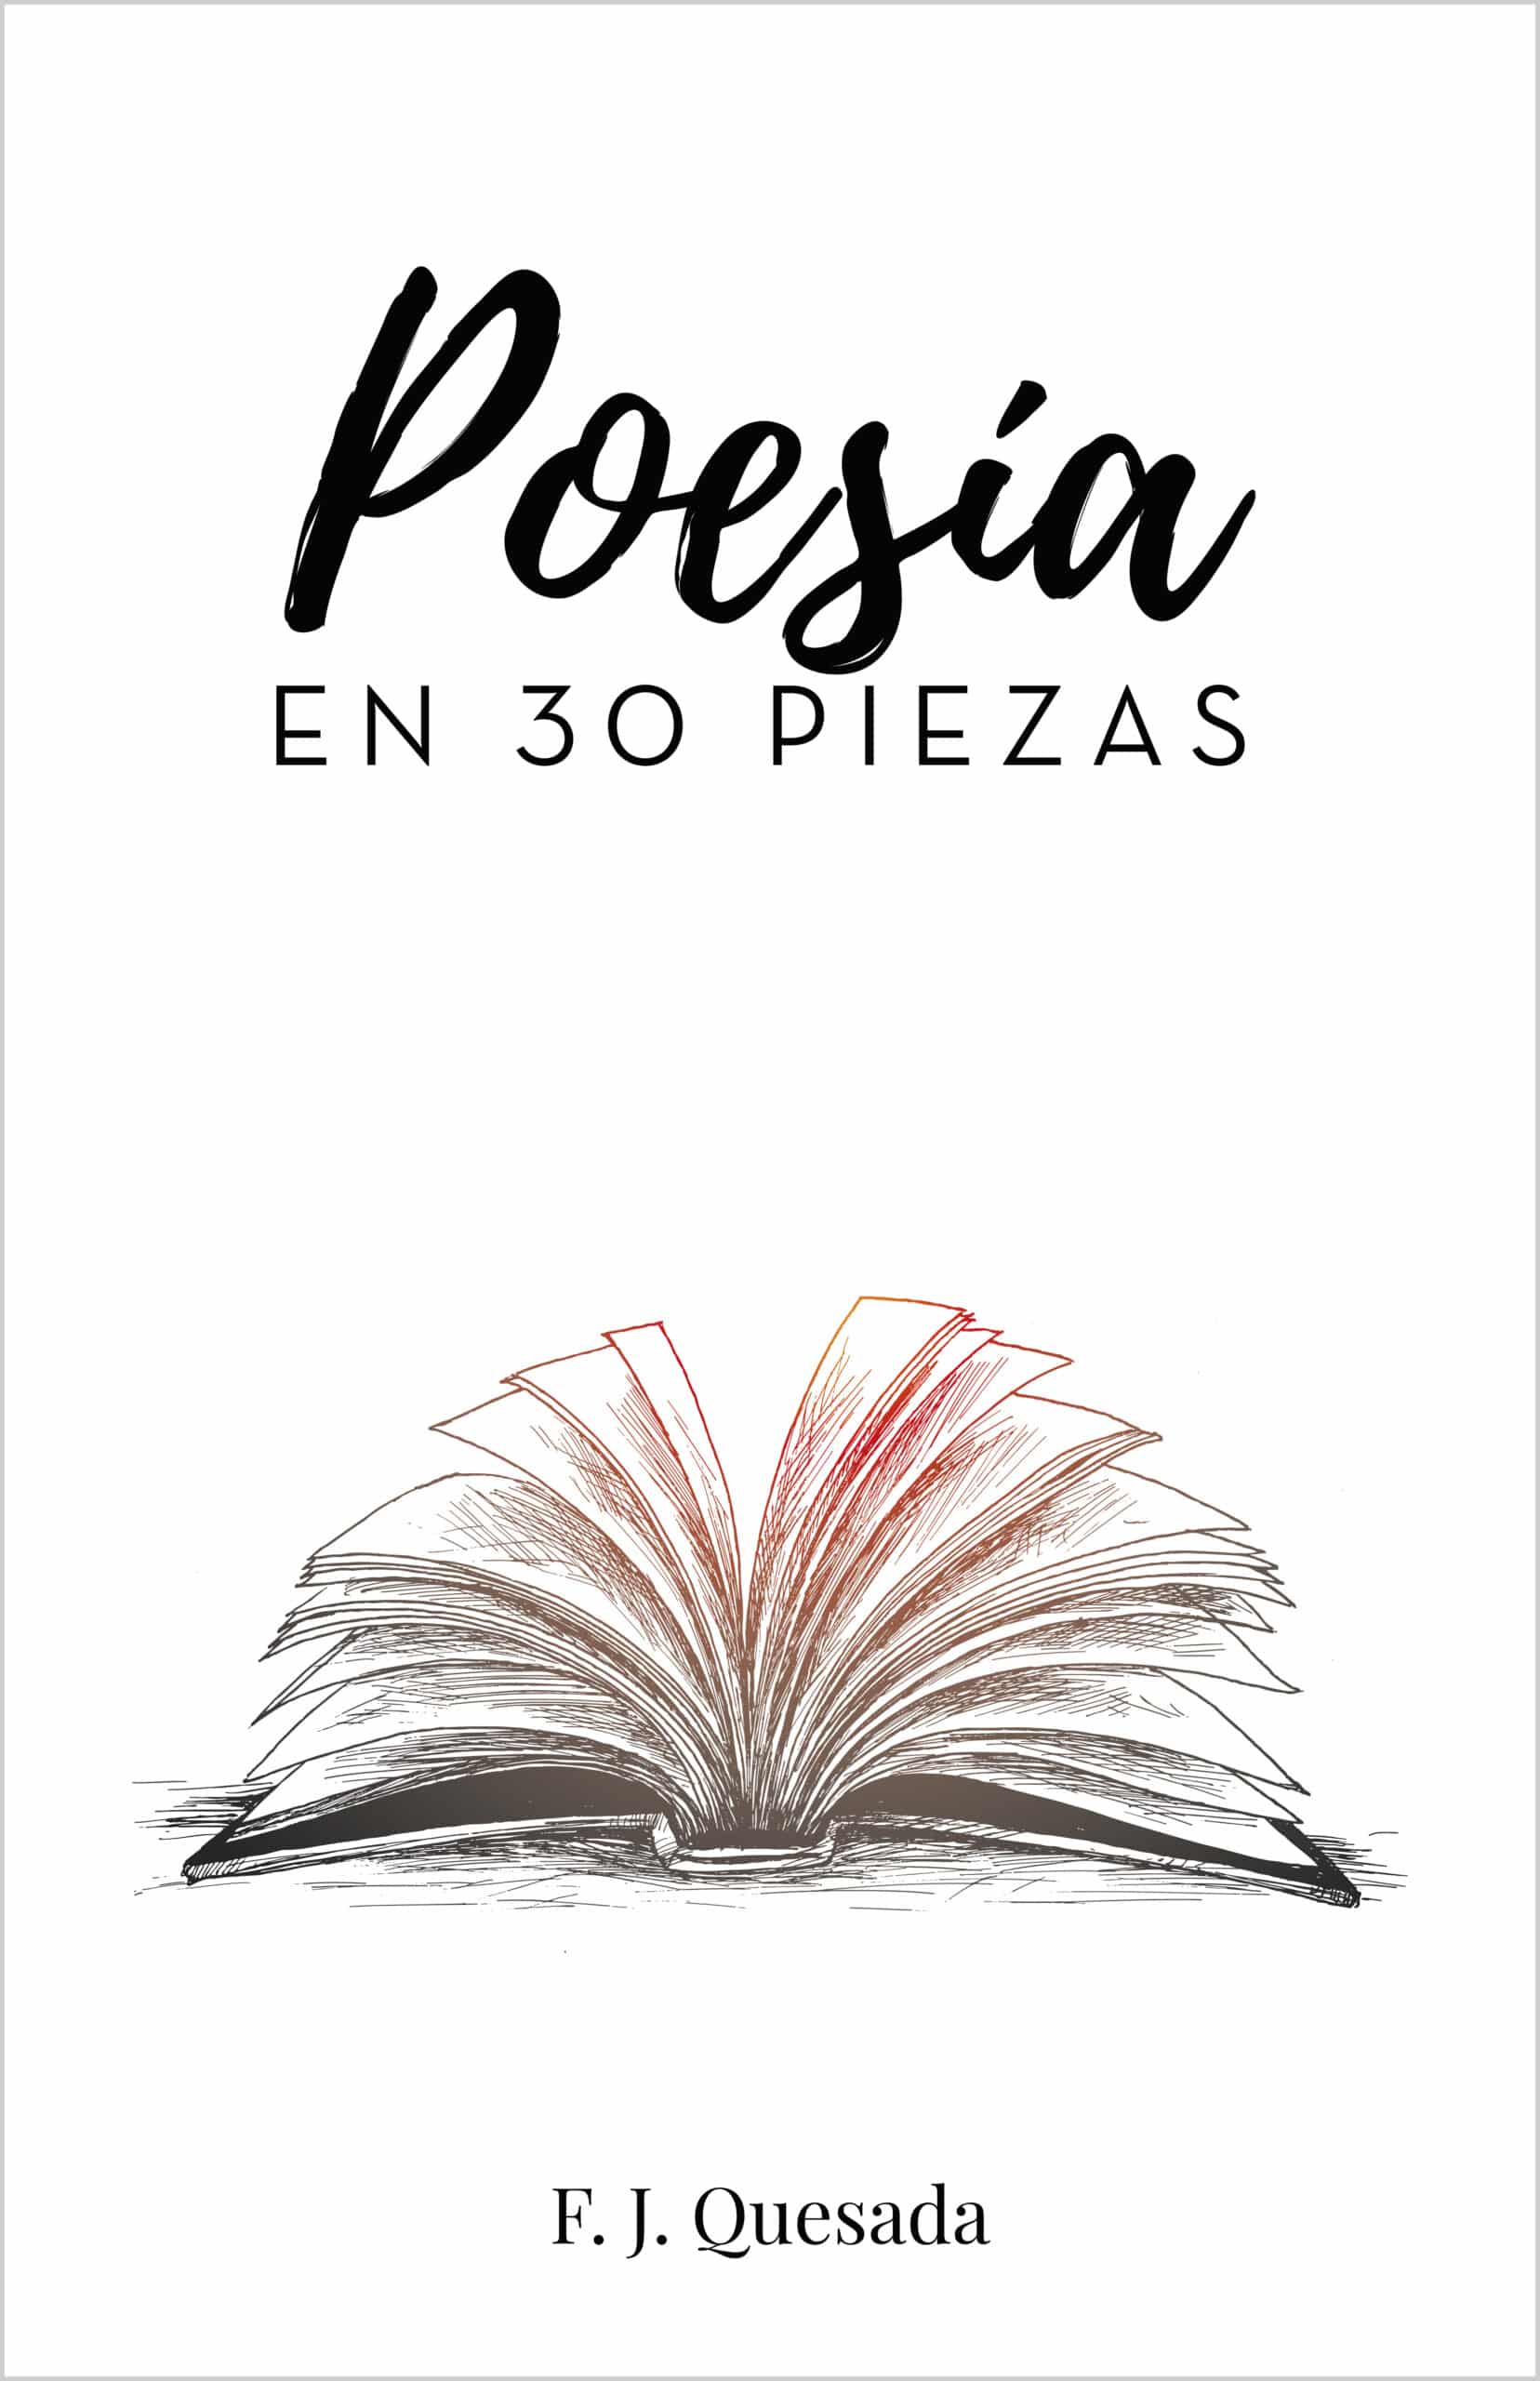 Poesía en 30 piezas, de F. J. Quesada